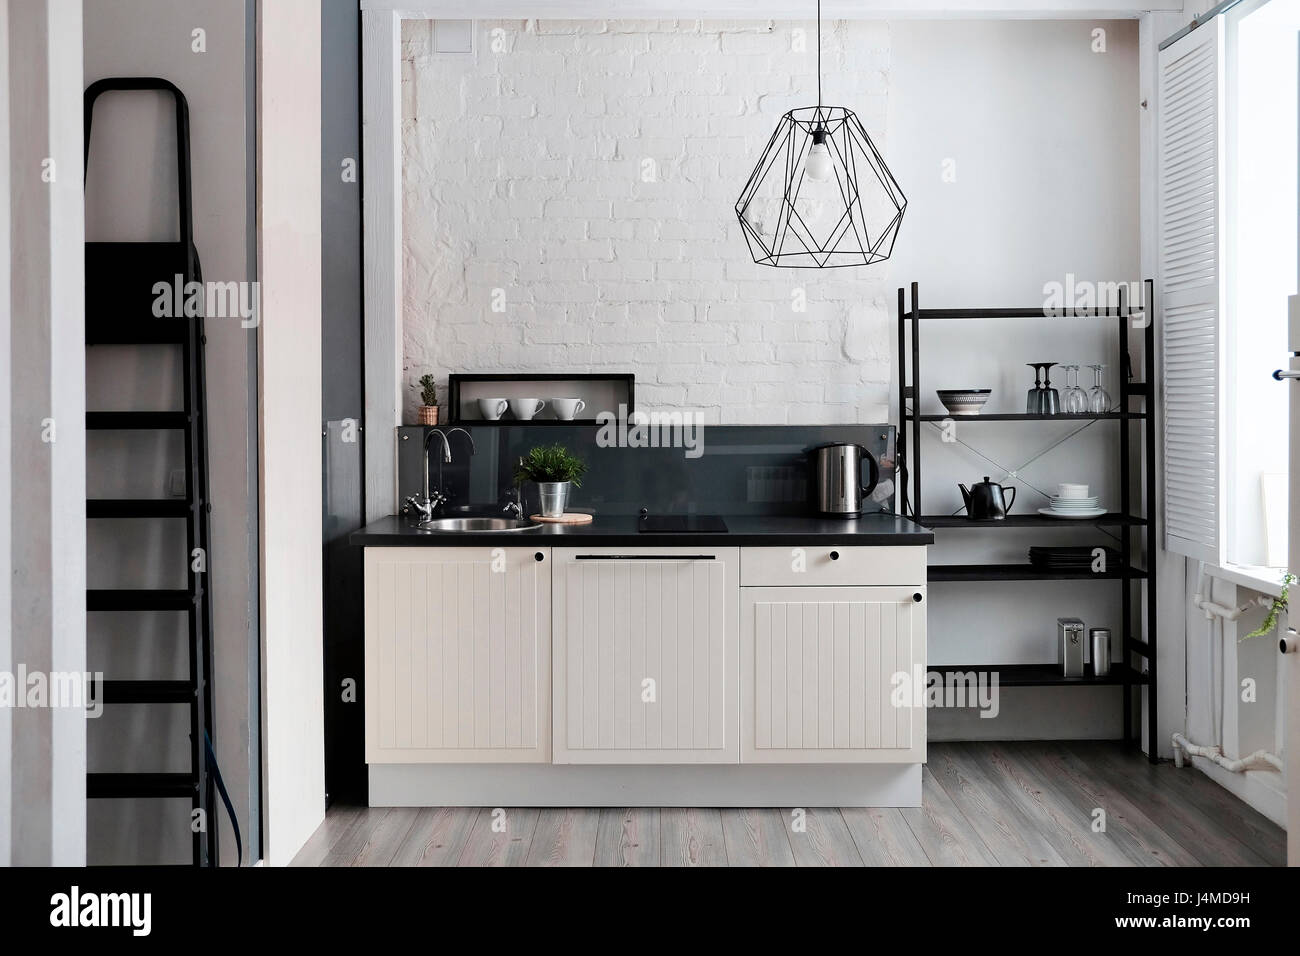 White and black domestic kitchen Stock Photo